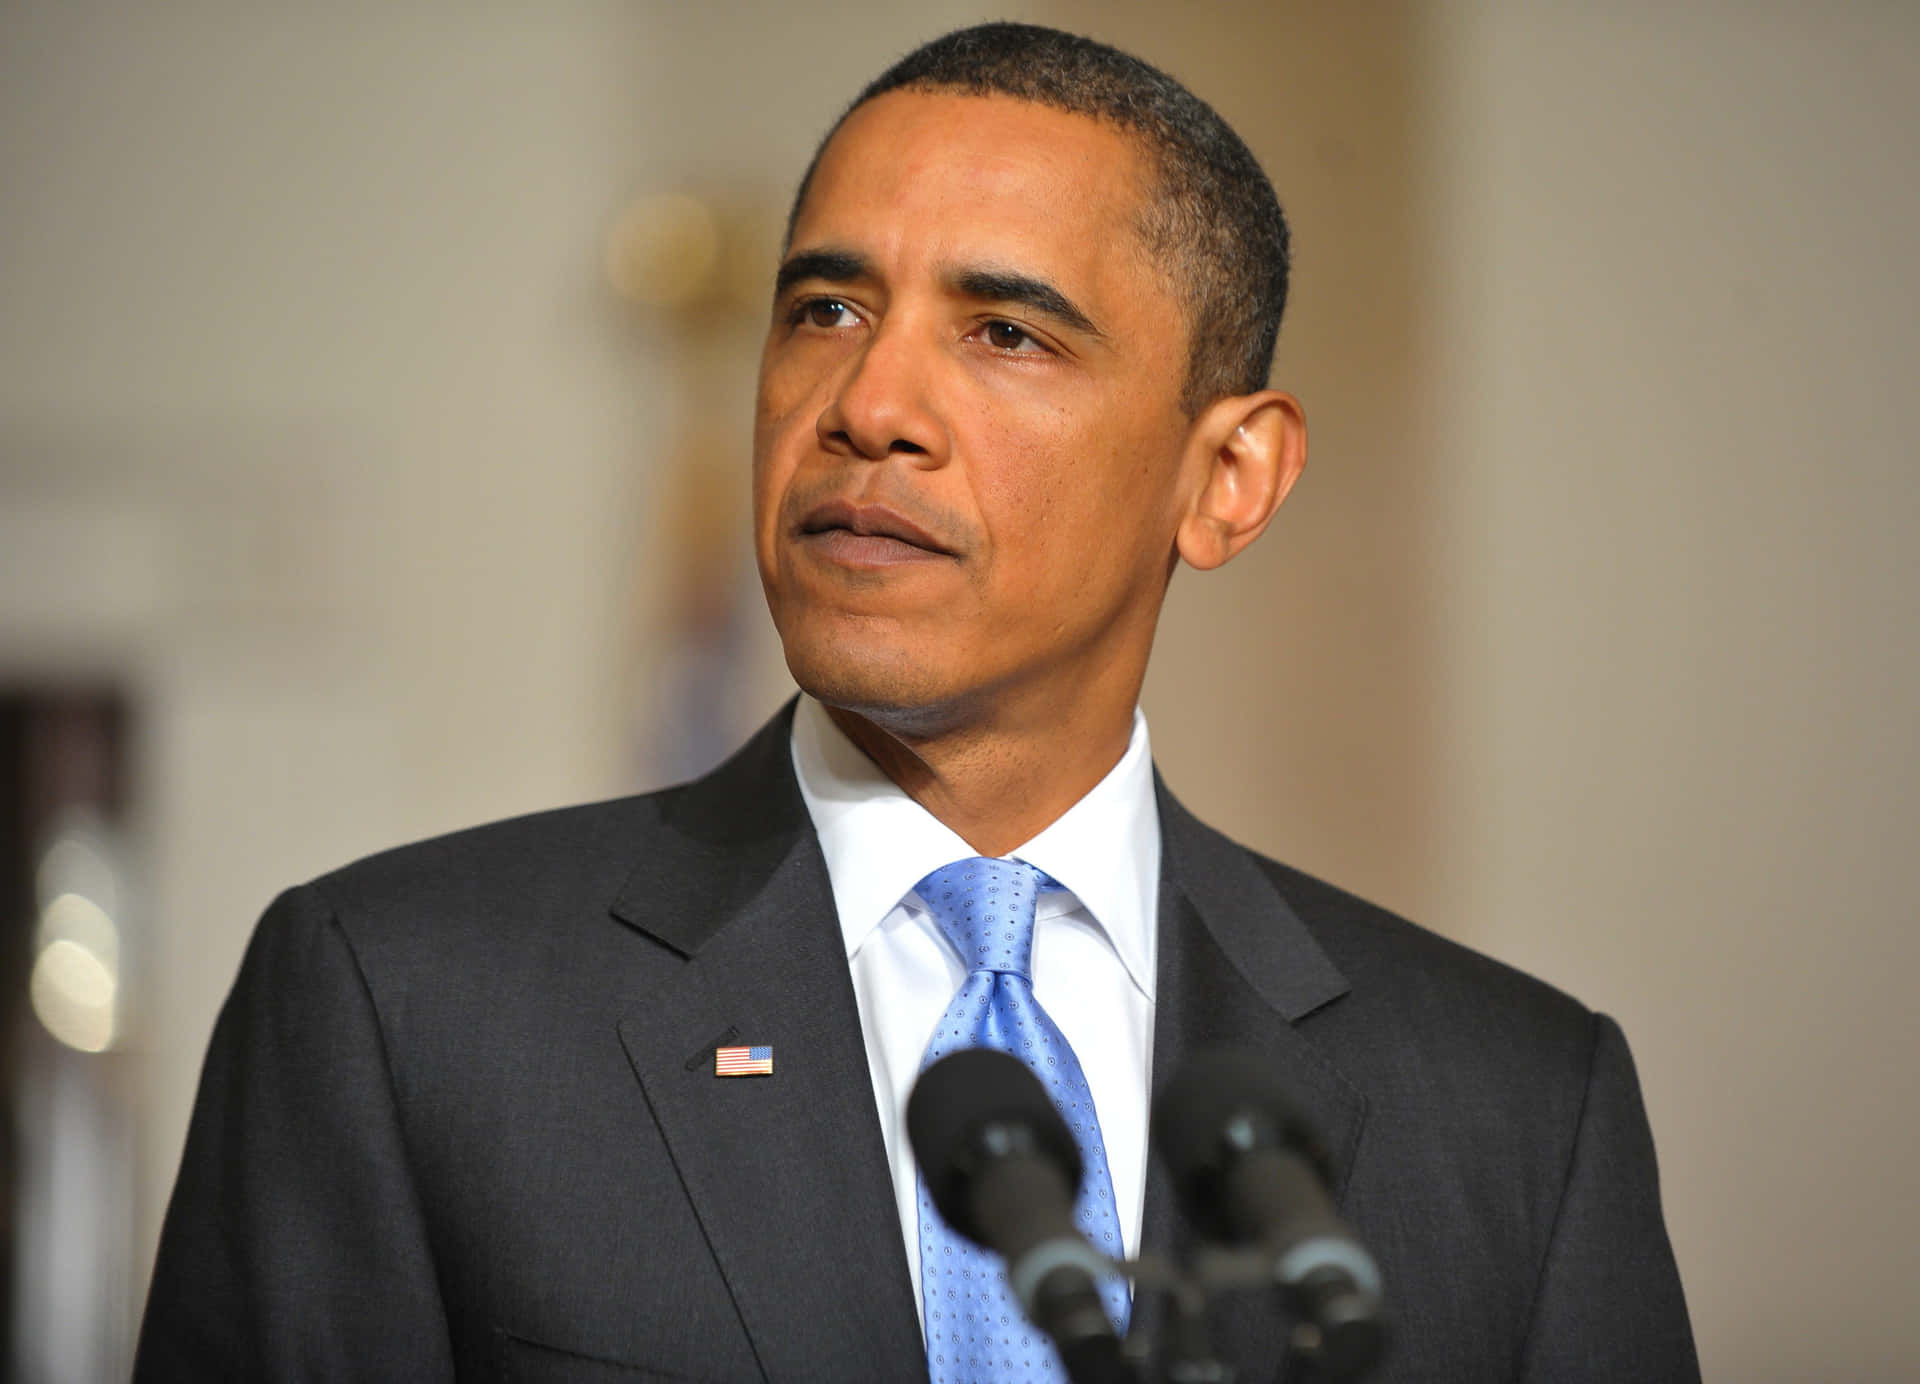 Tidligerepræsident Barack Obama Fører En Menneskemængde I Sin Valgslogan Fra 2008.